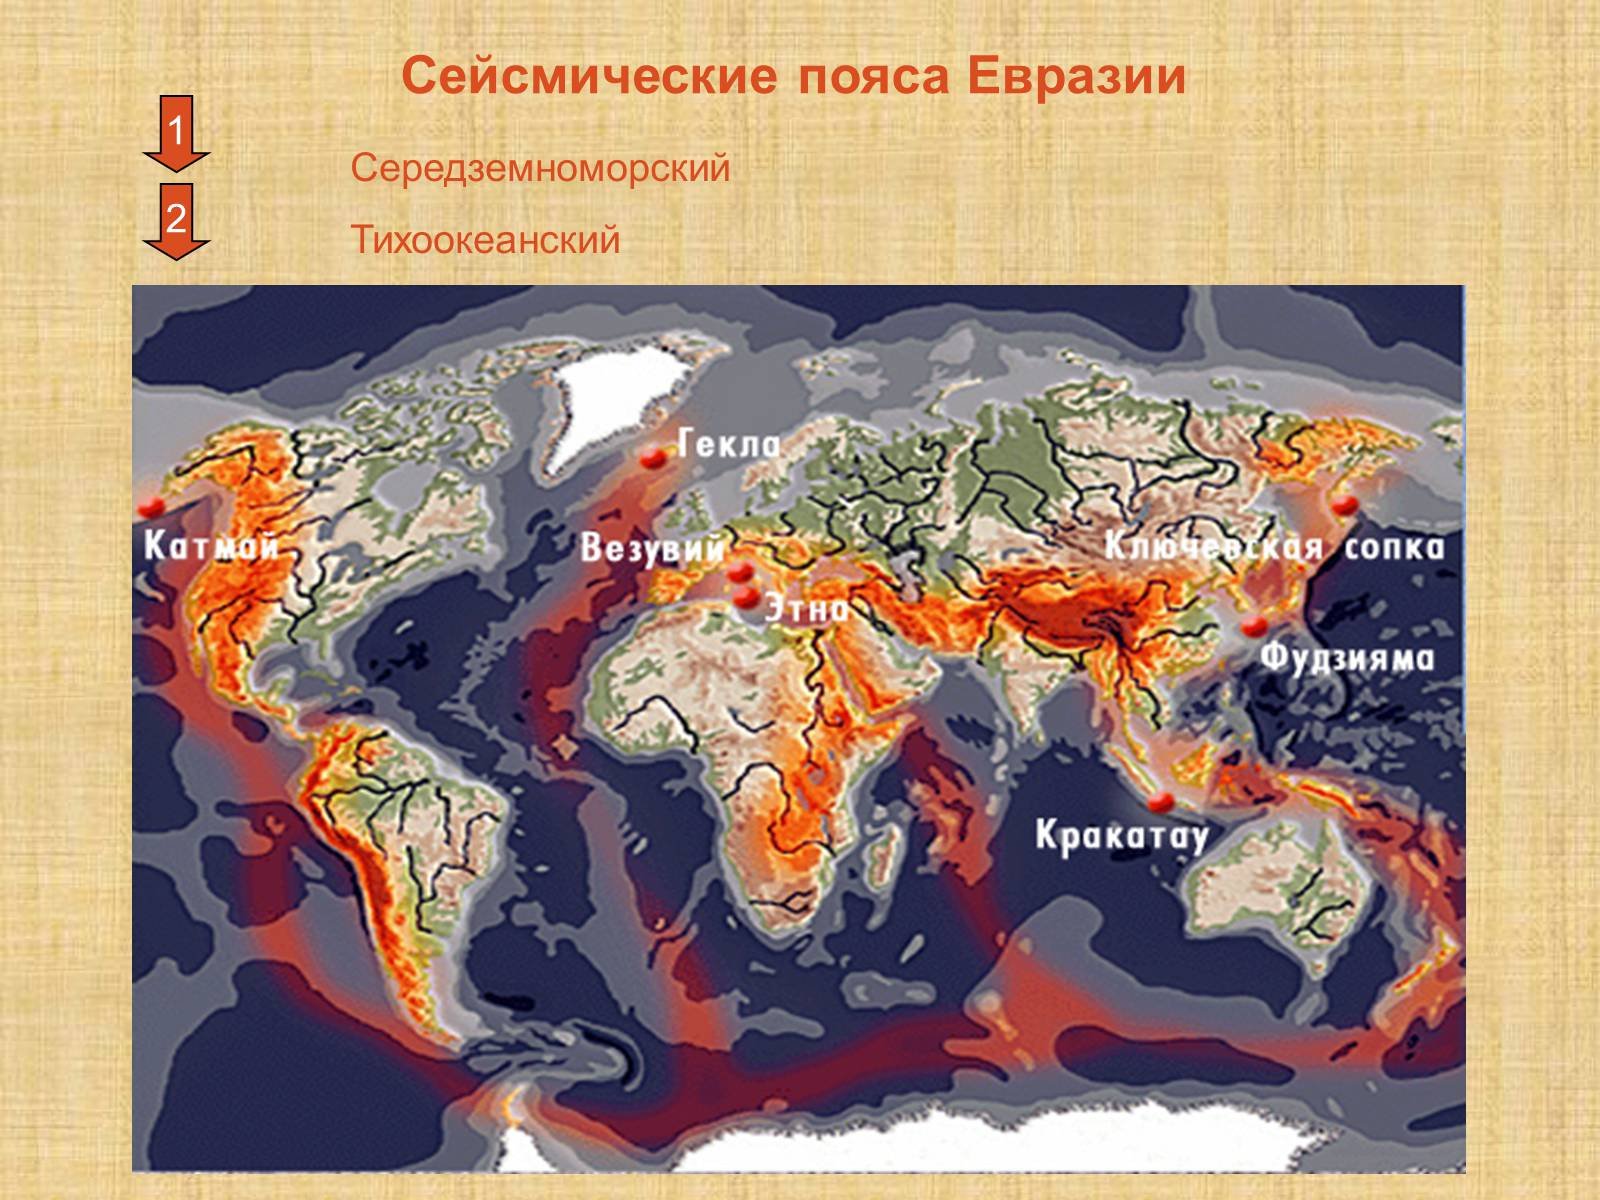 Сейсмически опасные зоны канады. Евразия сейсмические пояса Евразии. Рельеф Тихоокеанского сейсмического пояса. Сейсмоопасные зоны Евразии. Вулканы Тихоокеанского сейсмического пояса.